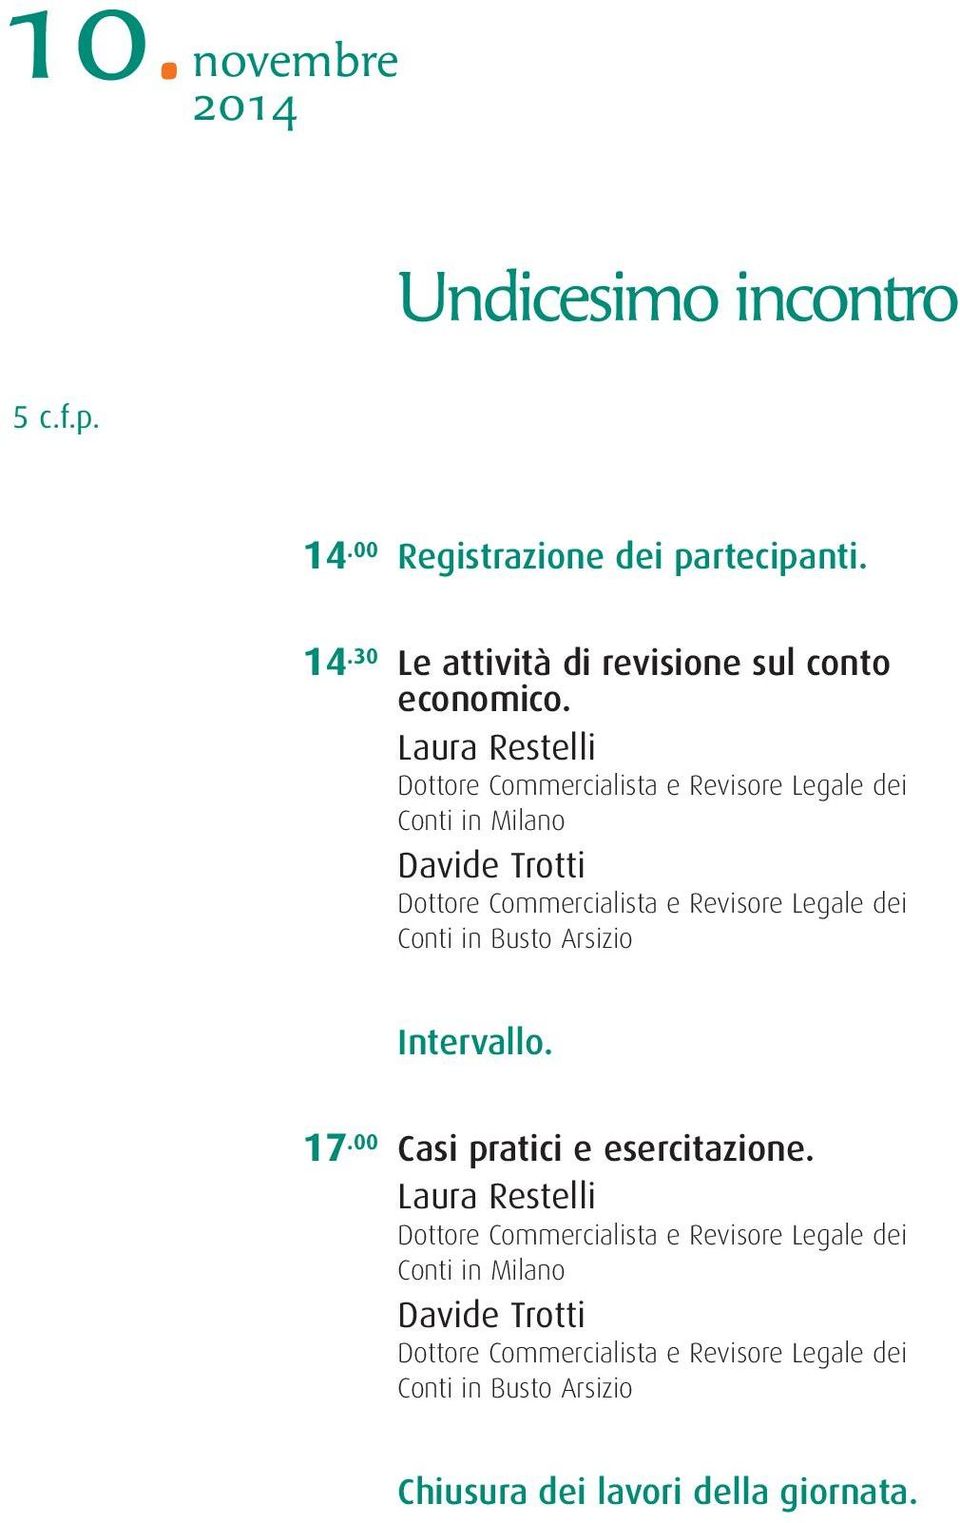 Laura Restelli Davide Trotti Conti in Busto Arsizio 17.